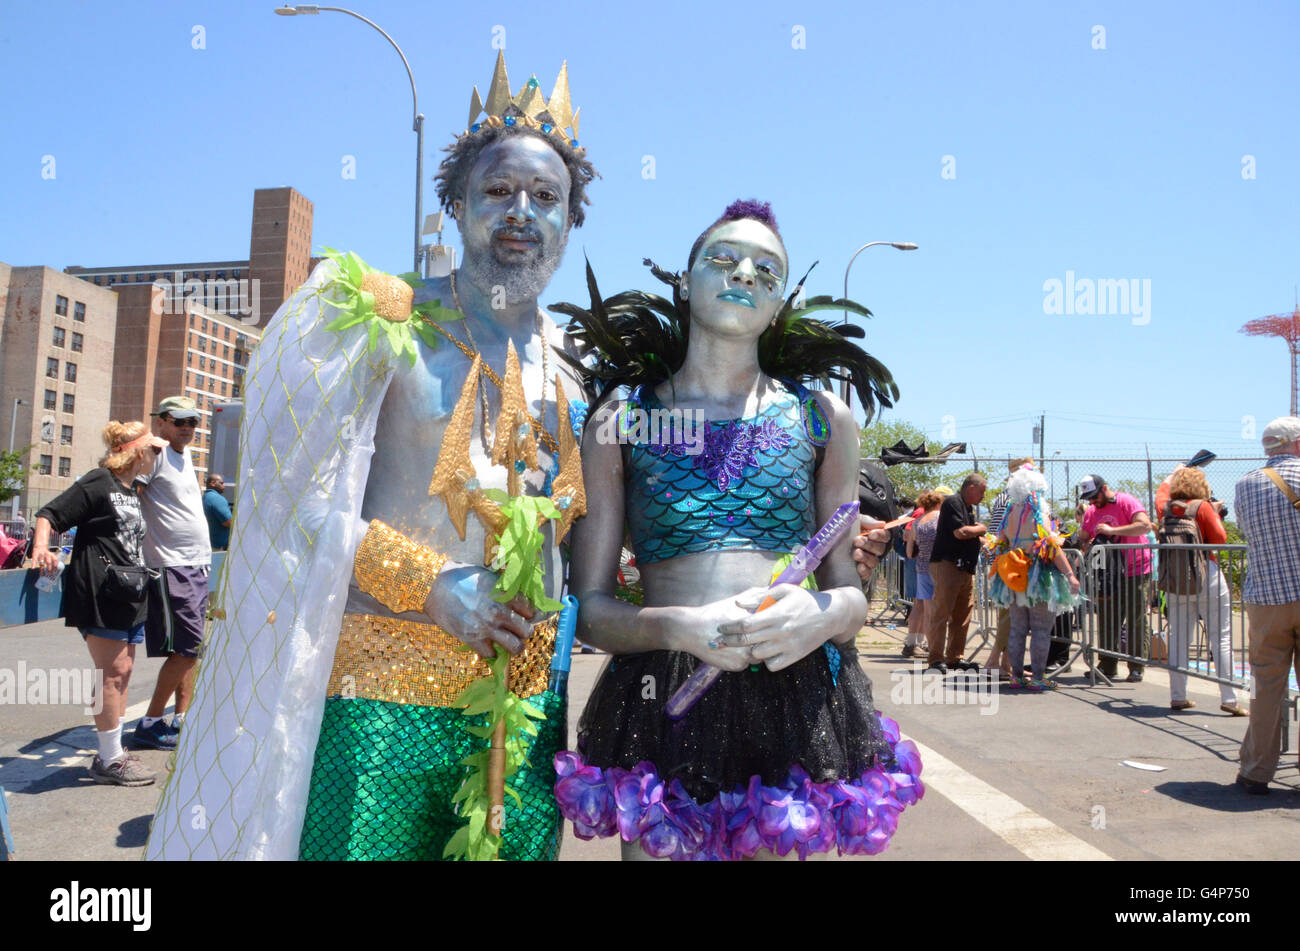 Coney Island, Nueva York, Estados Unidos. 18 de junio de 2016. mermaid parade Coney Island 2016 brooklyn Simon Leigh, Nueva York, EE.UU. Crédito: Simon leigh/Alamy Live News Foto de stock